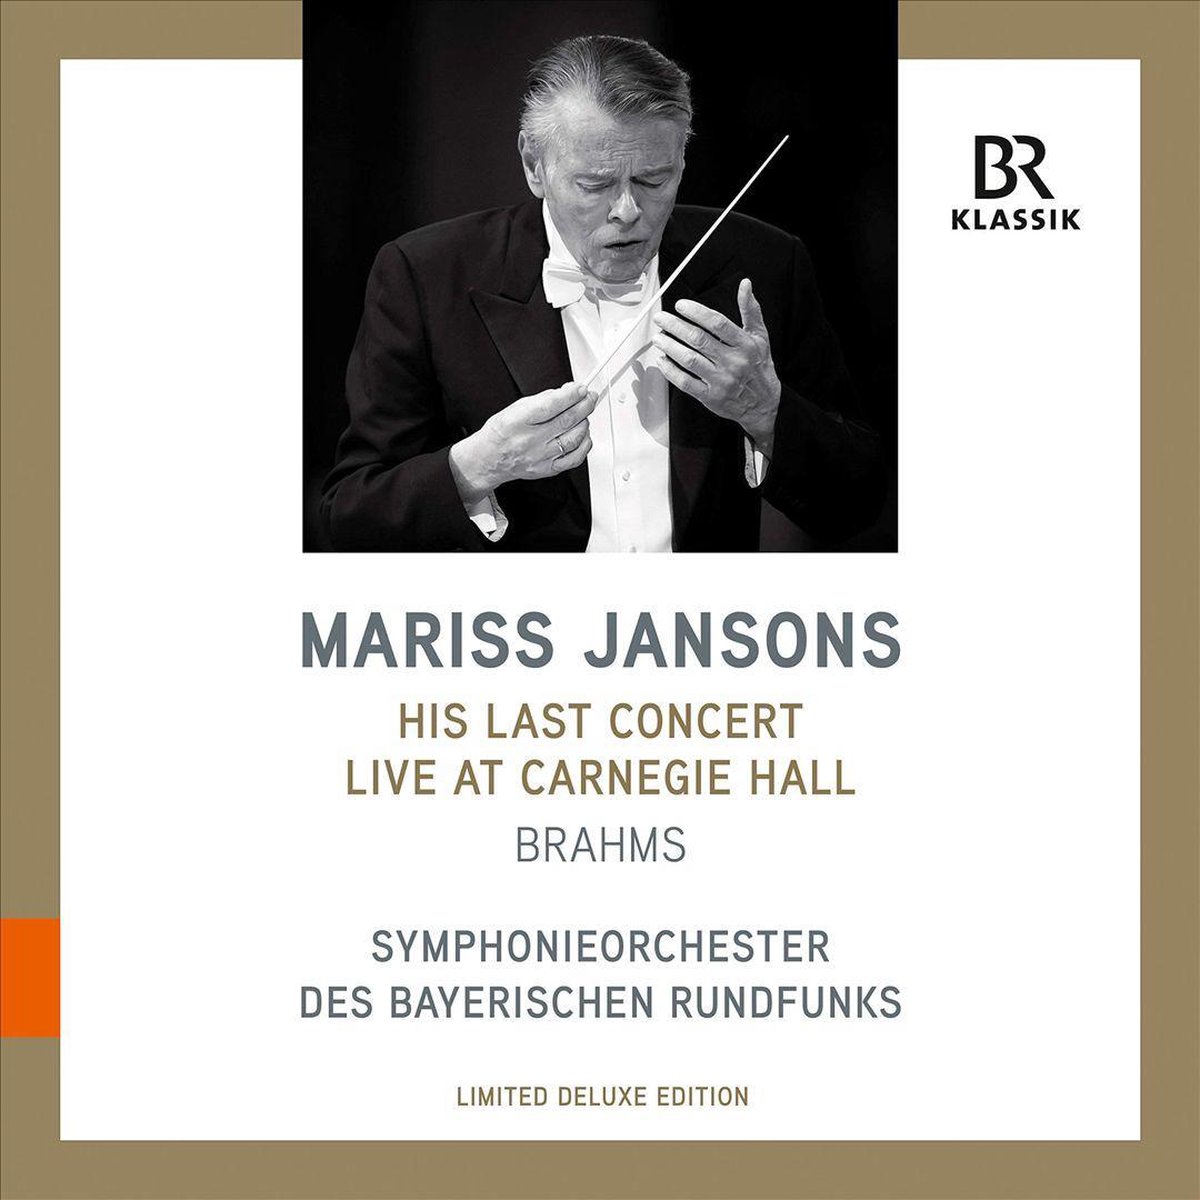 Vinile Mariss Jansons: His Last Concert At Carnegie Hall NUOVO SIGILLATO, EDIZIONE DEL 30/11/2020 SUBITO DISPONIBILE